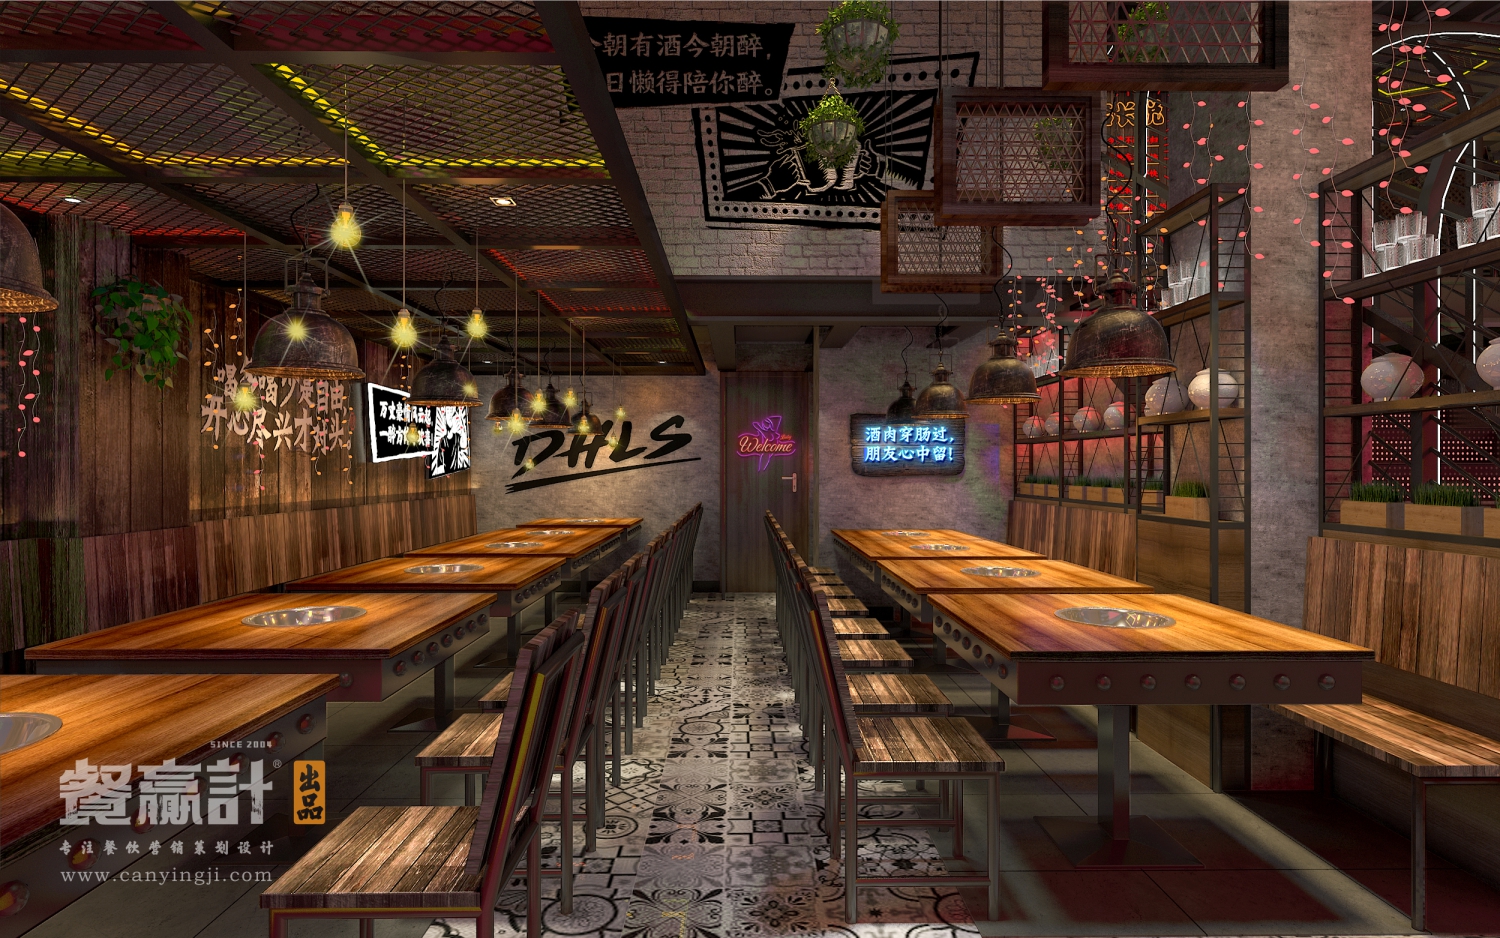 东莞宵夜连锁餐饮品牌灯火阑珊餐厅内部空间设计